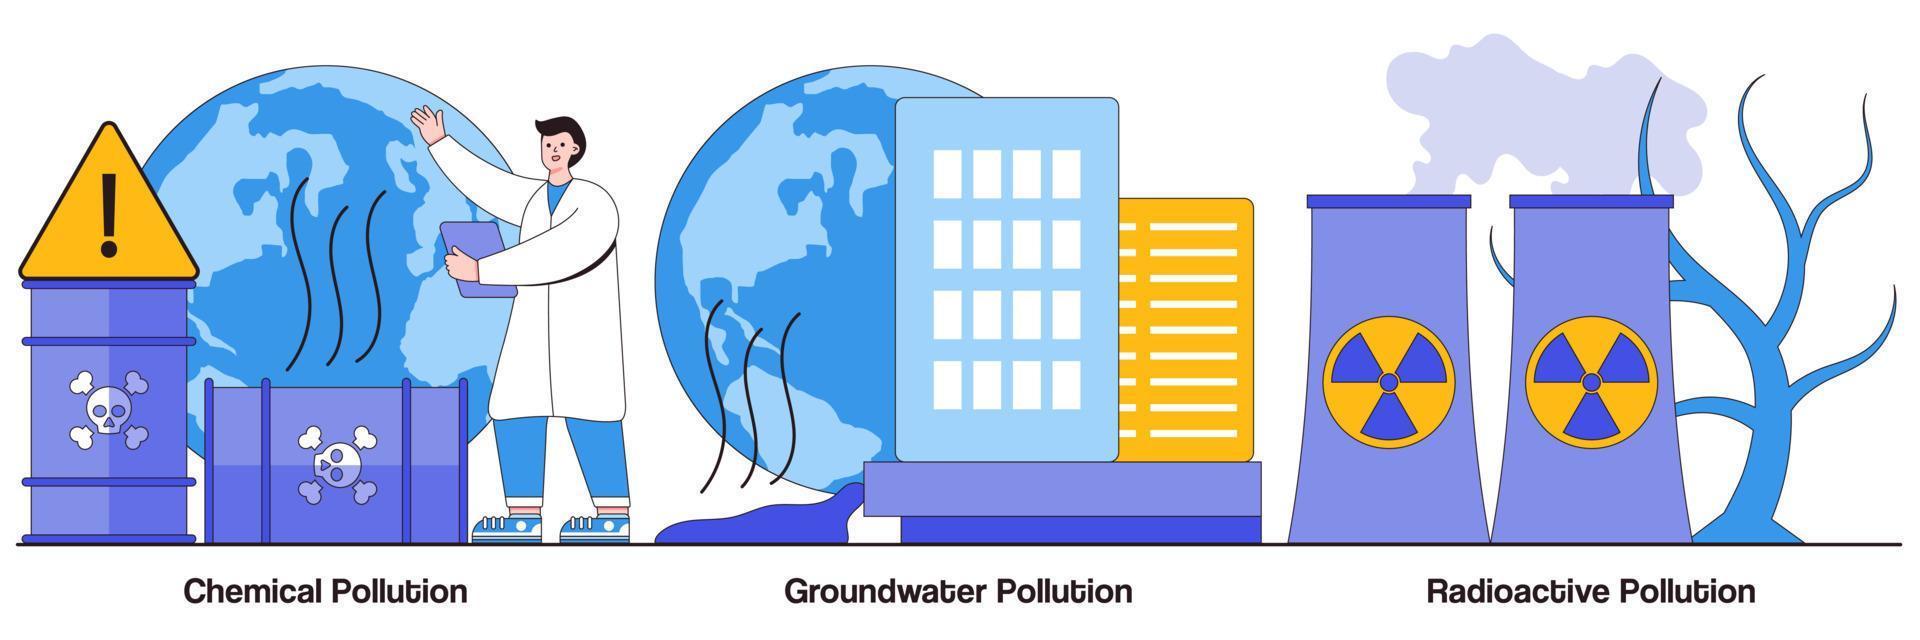 Illustrierte Packung mit Chemikalien, Grundwasser und radioaktiver Verschmutzung vektor